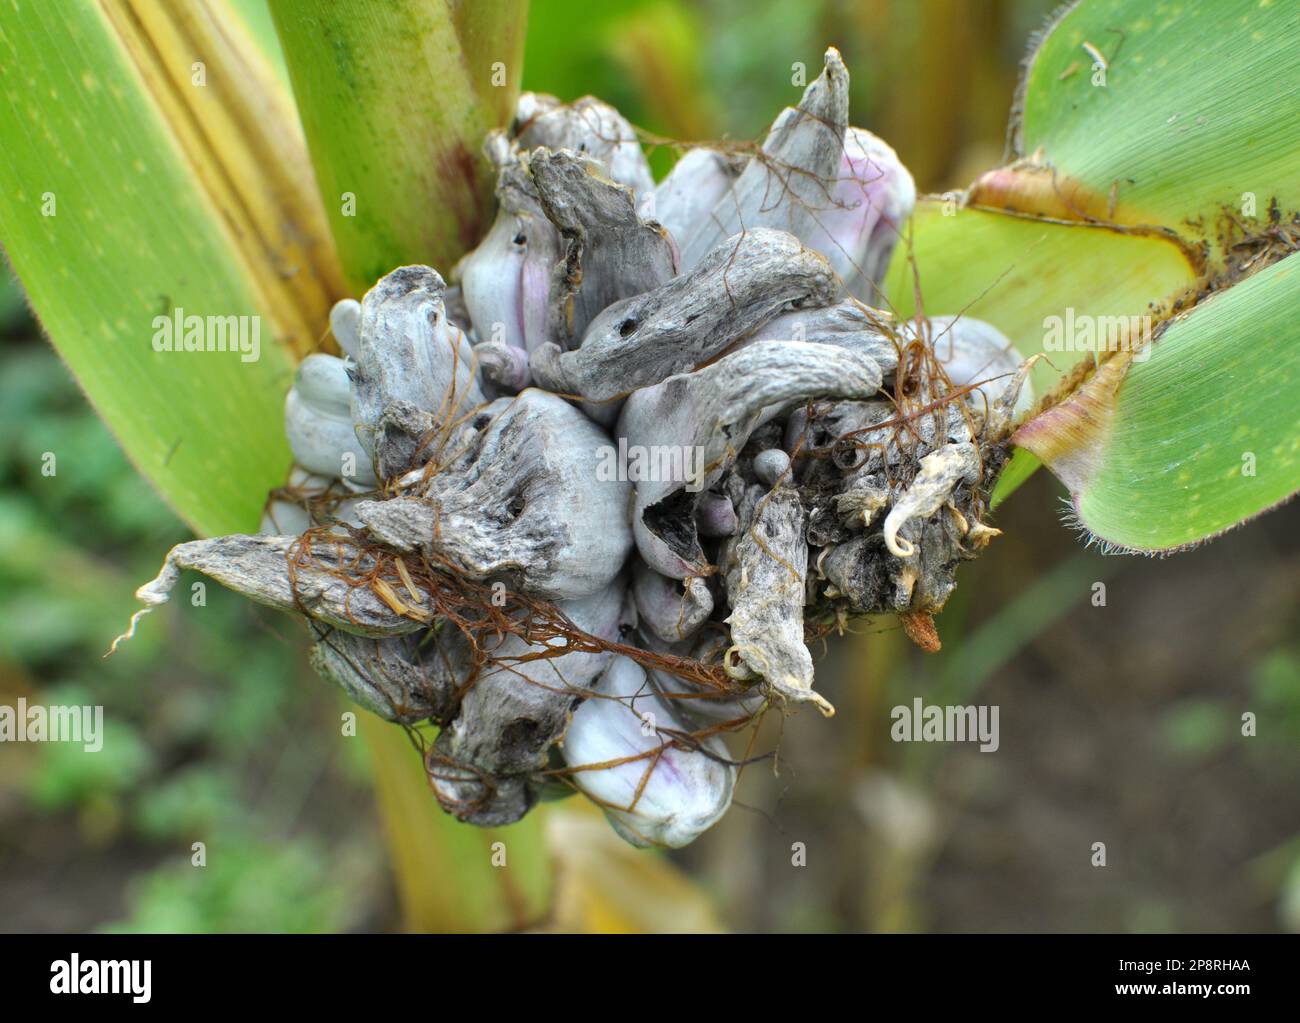 Plante de maïs malade affectée par le champignon Ustilago zeae Unger Banque D'Images